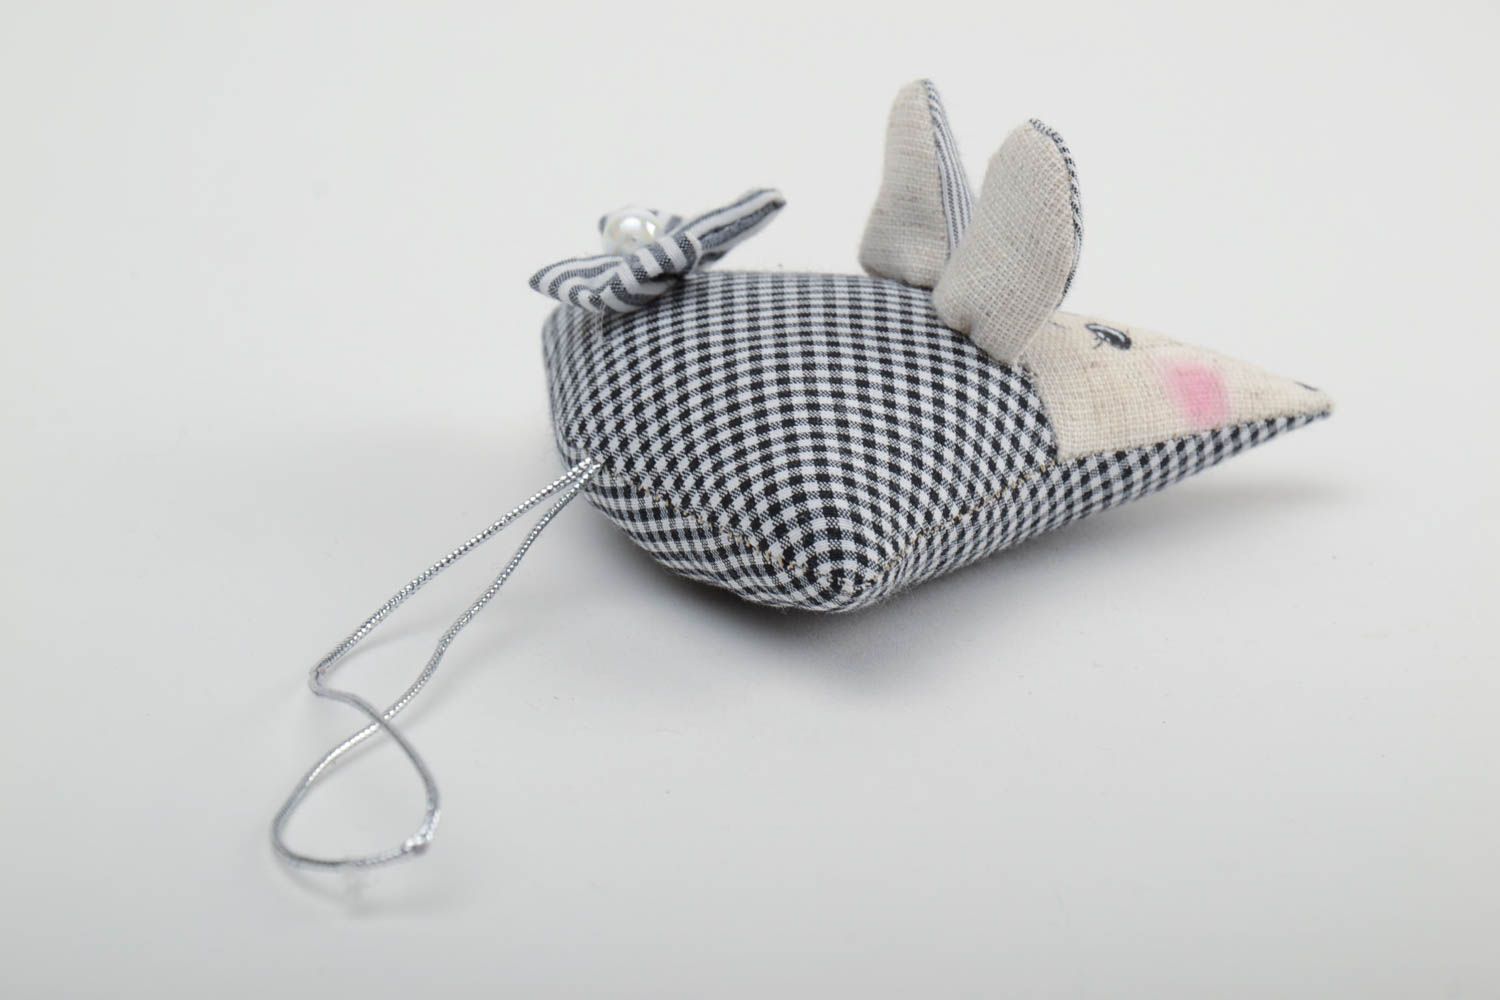 Интерьерная подвеска мышка ручной работы из ткани на шнурке авторская милая фото 3